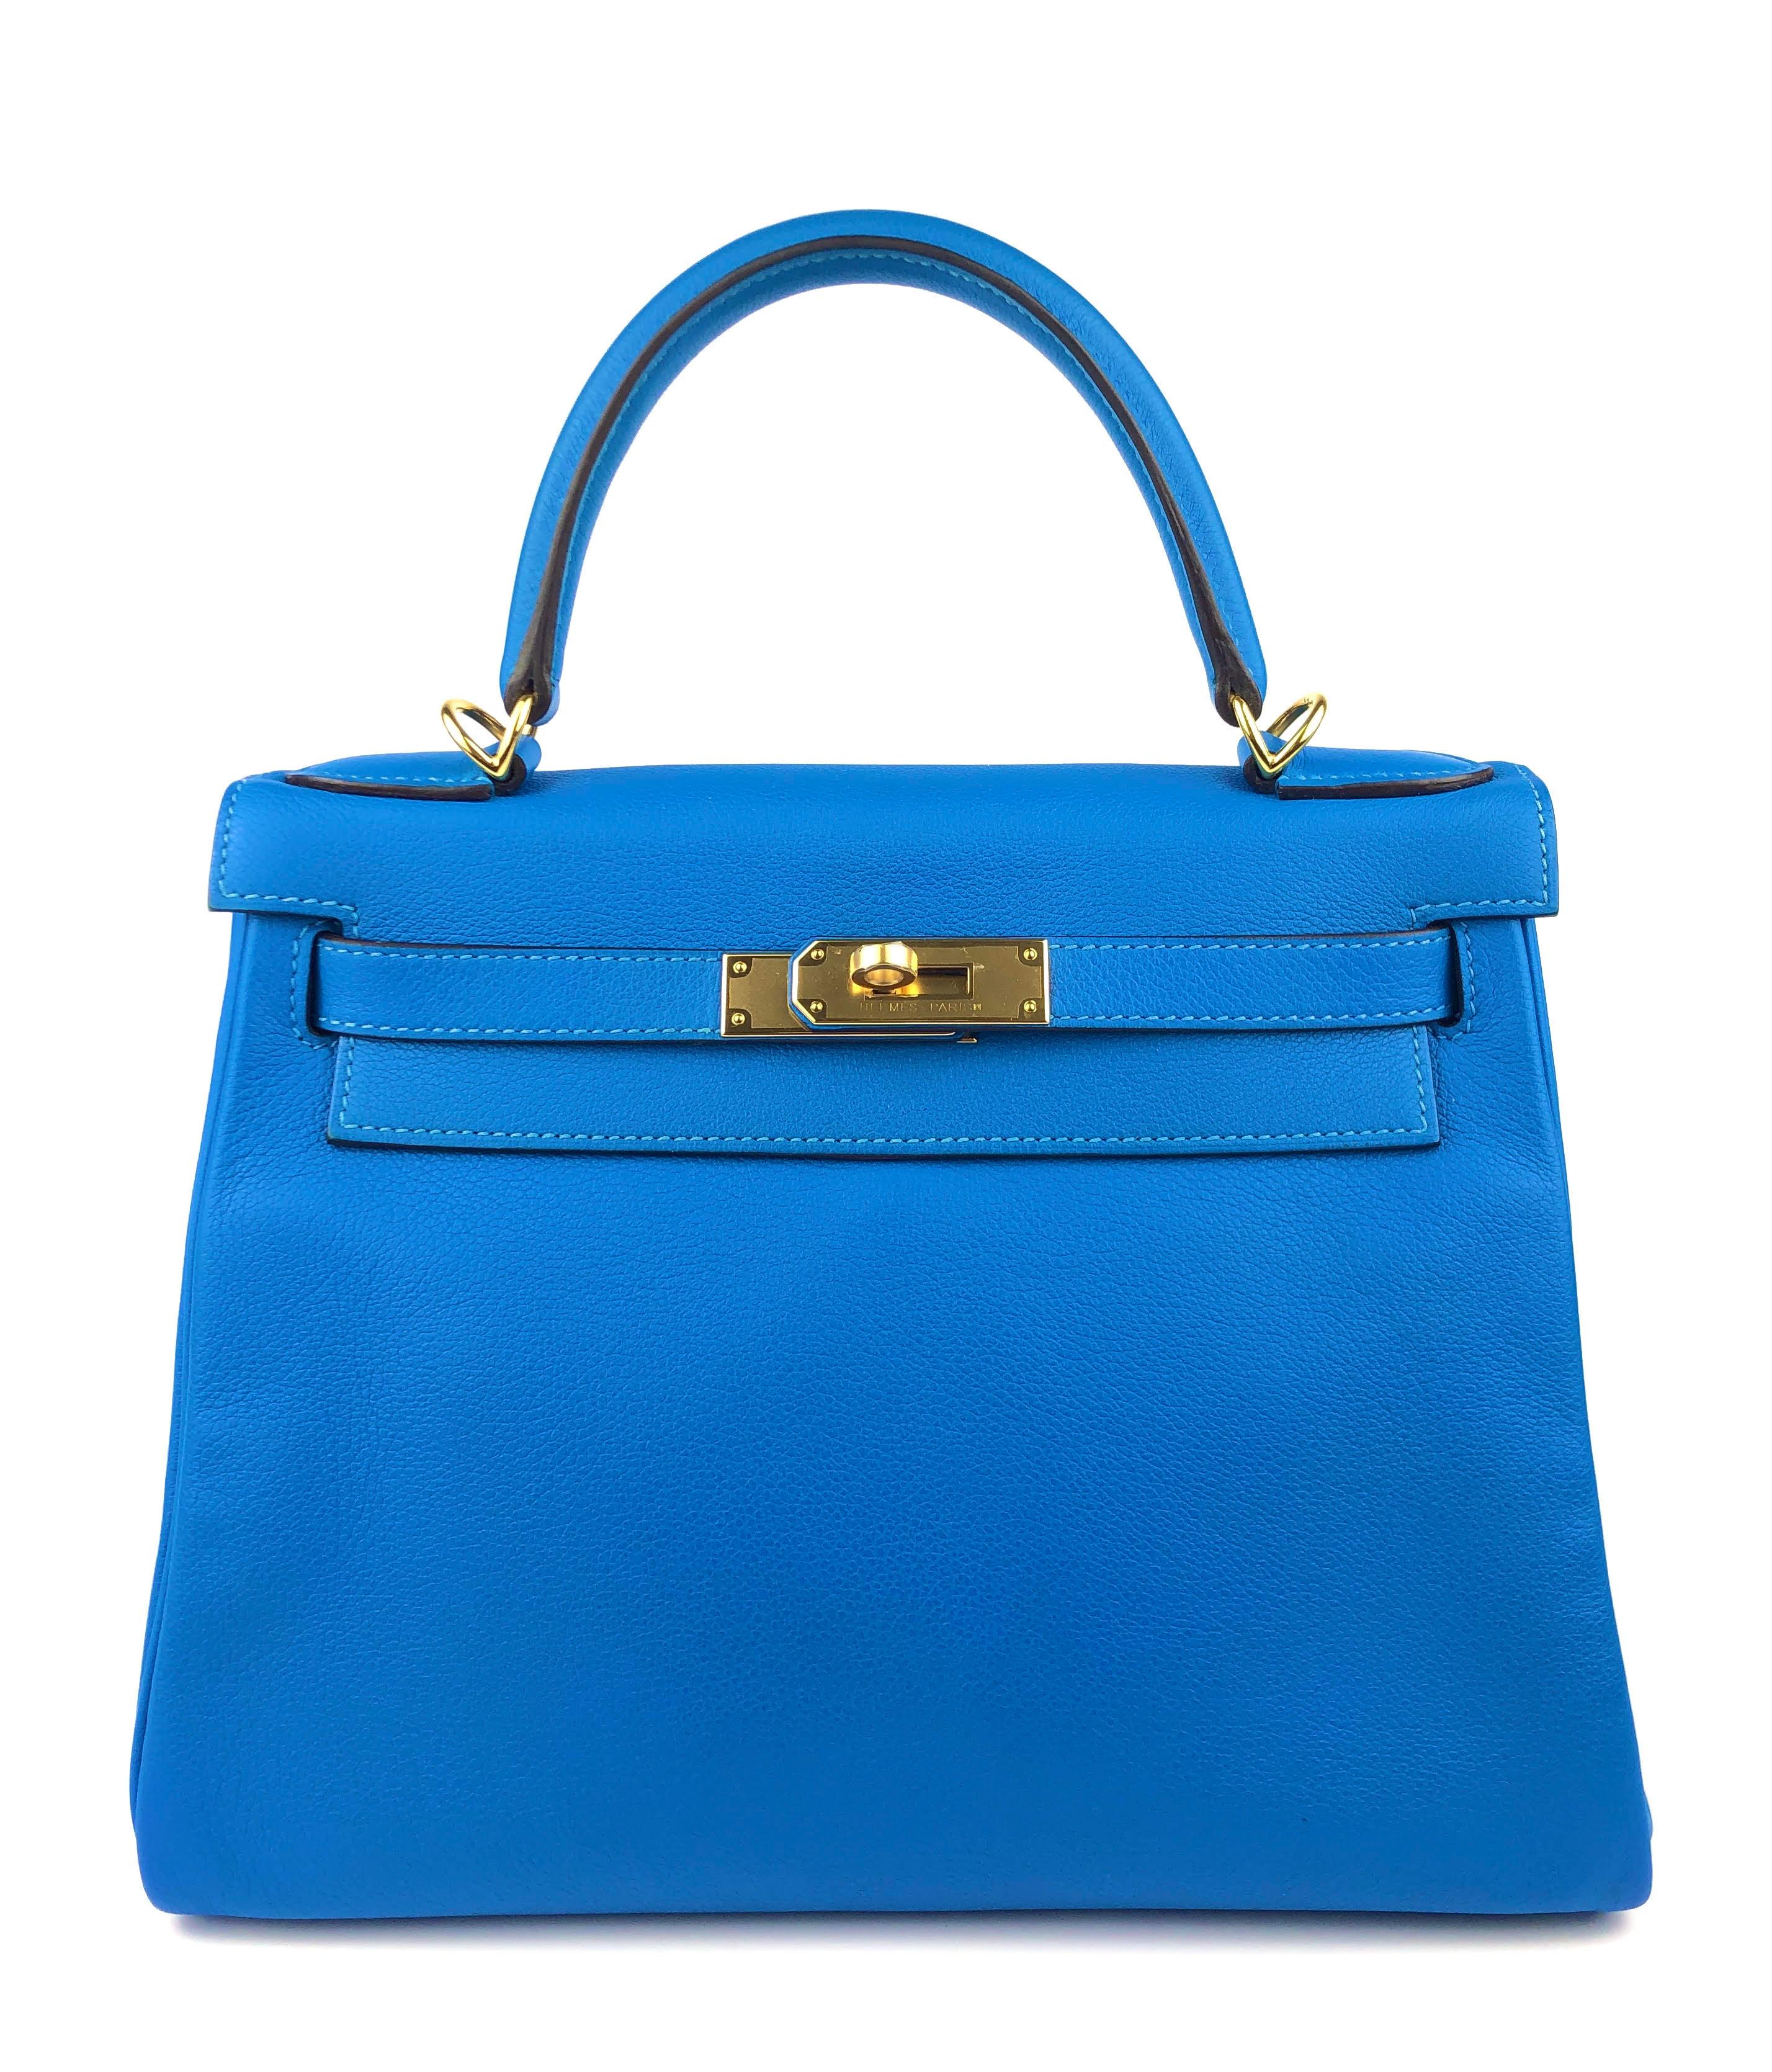 Cet authentique Hermès Intense Blue Evercolor 28 cm Kelly est en parfait état avec le plastique de protection intact sur le matériel.     Les sacs Hermès sont considérés comme l'article de luxe par excellence dans le monde entier.  Chaque pièce est